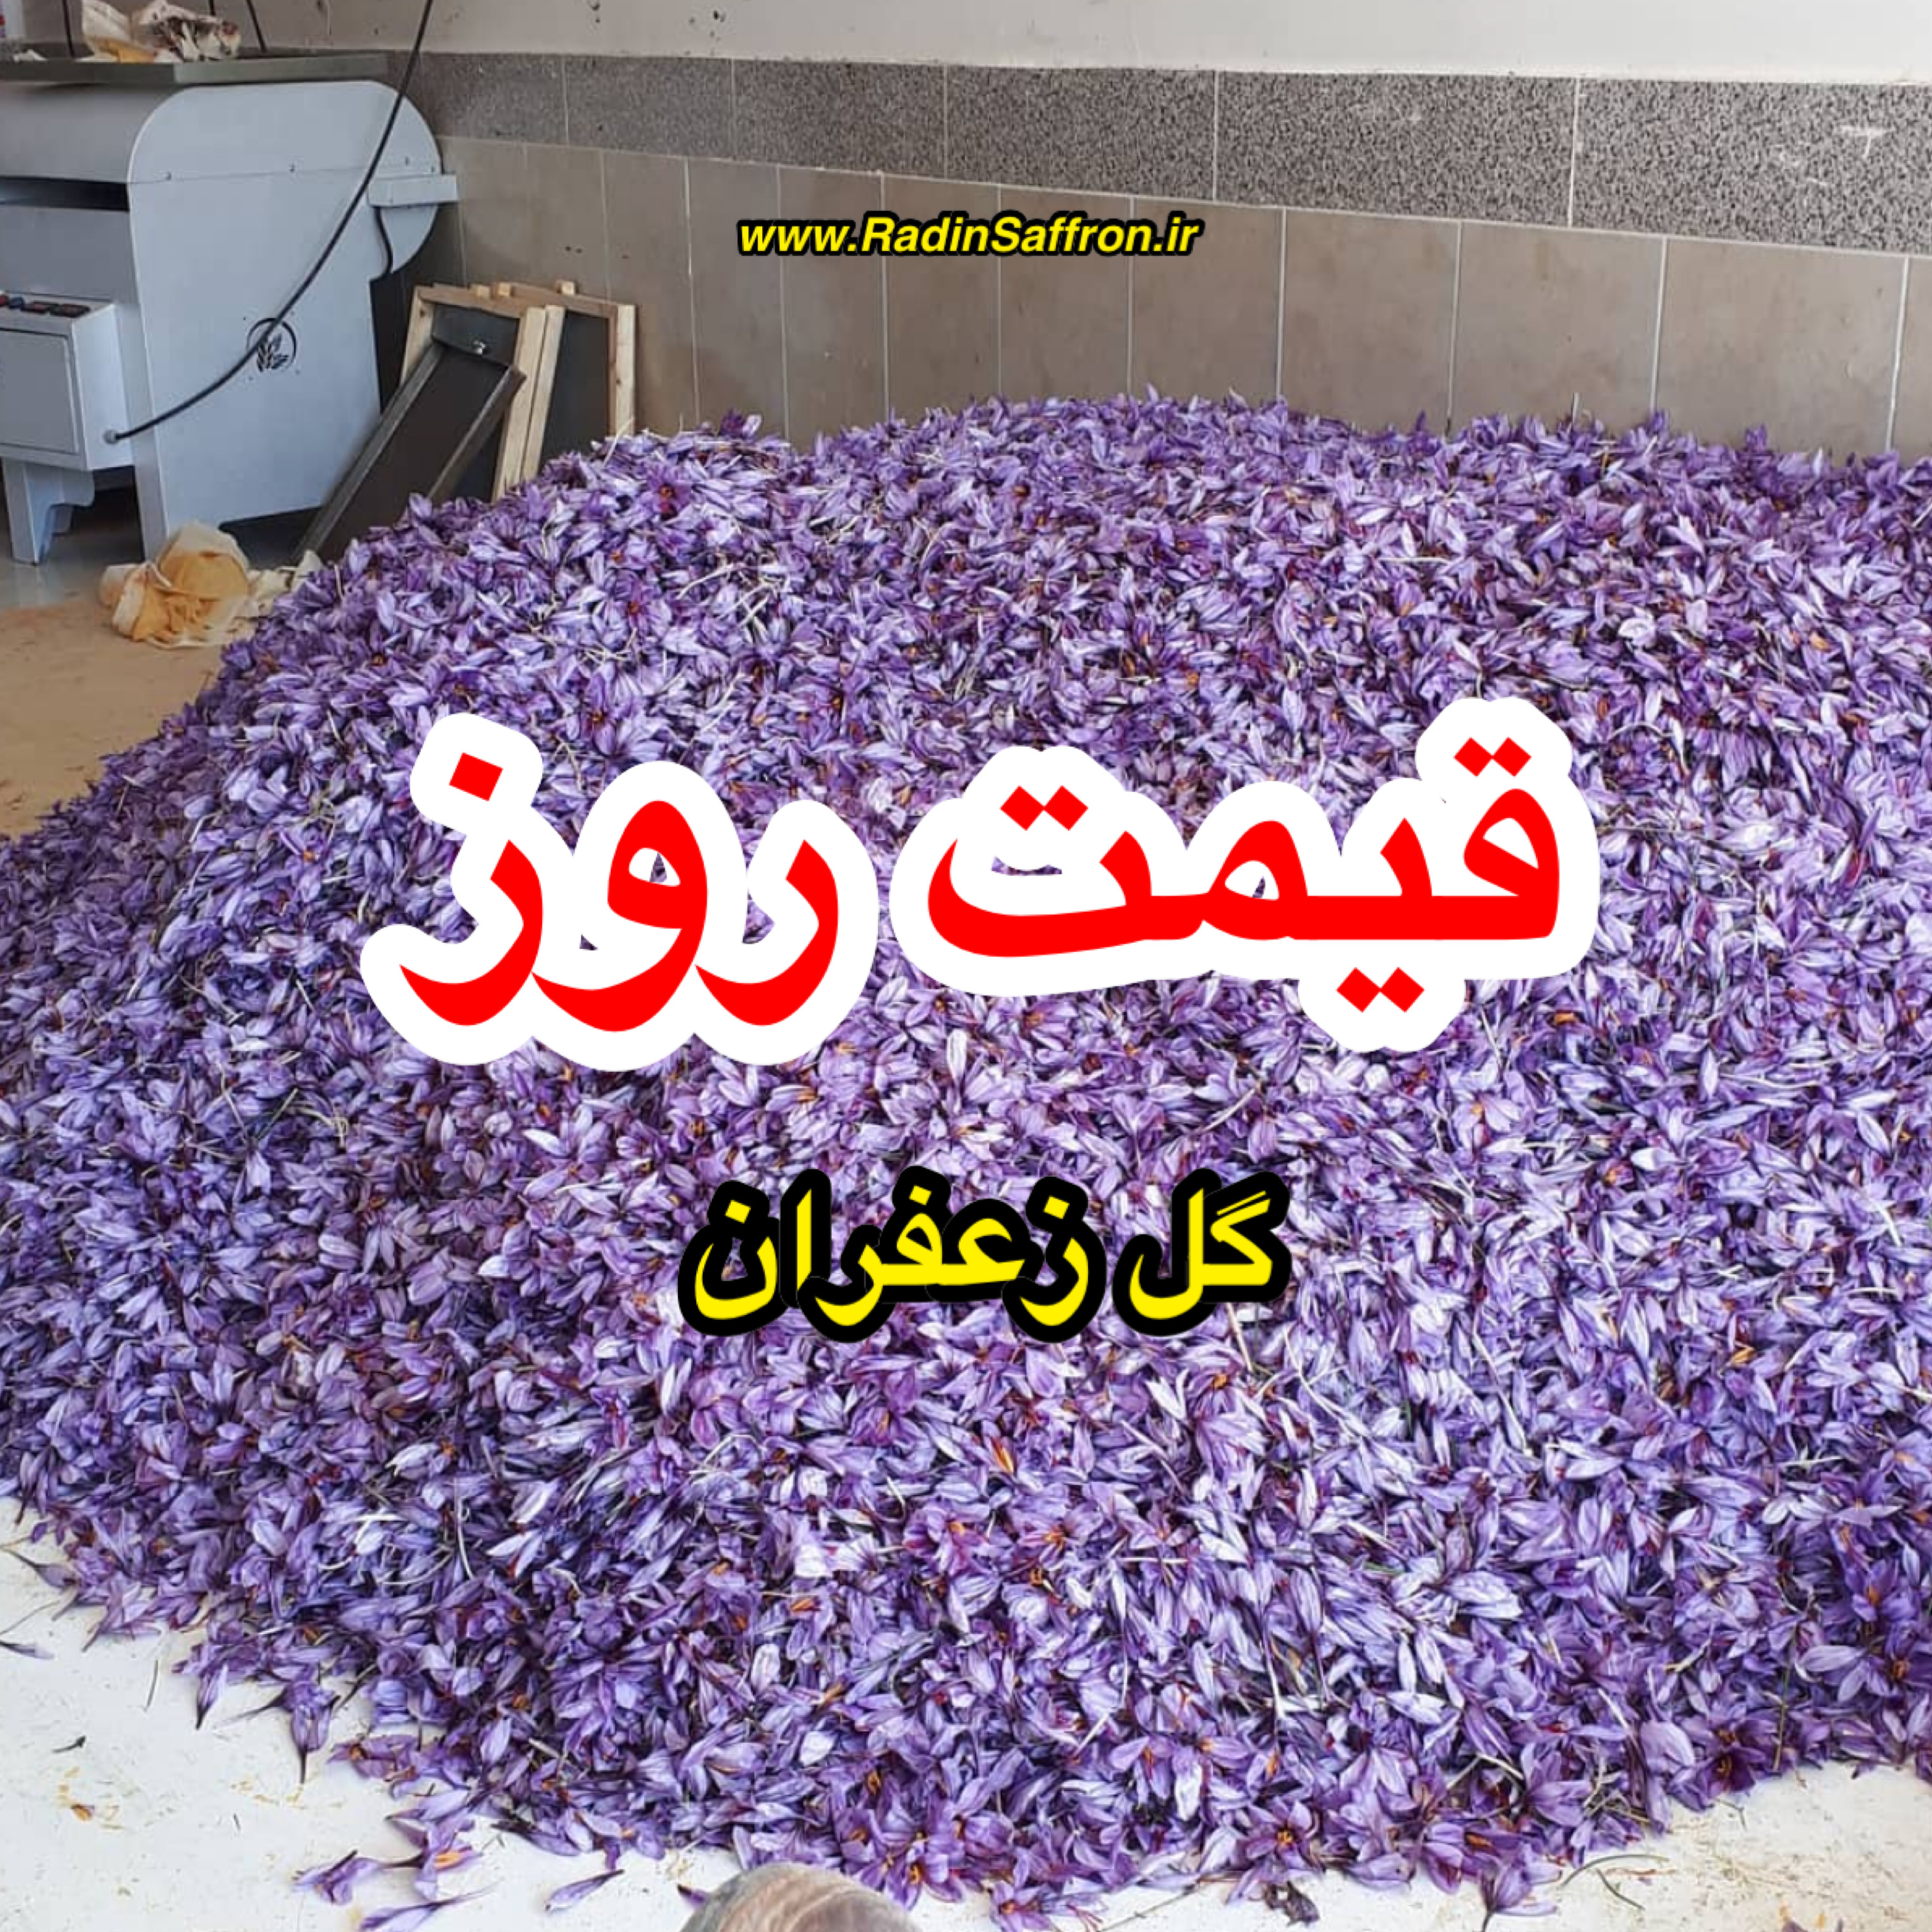 قیمت روز گل زعفران | روز پنج شنبه ۲۲ آبان ماه ۹۹